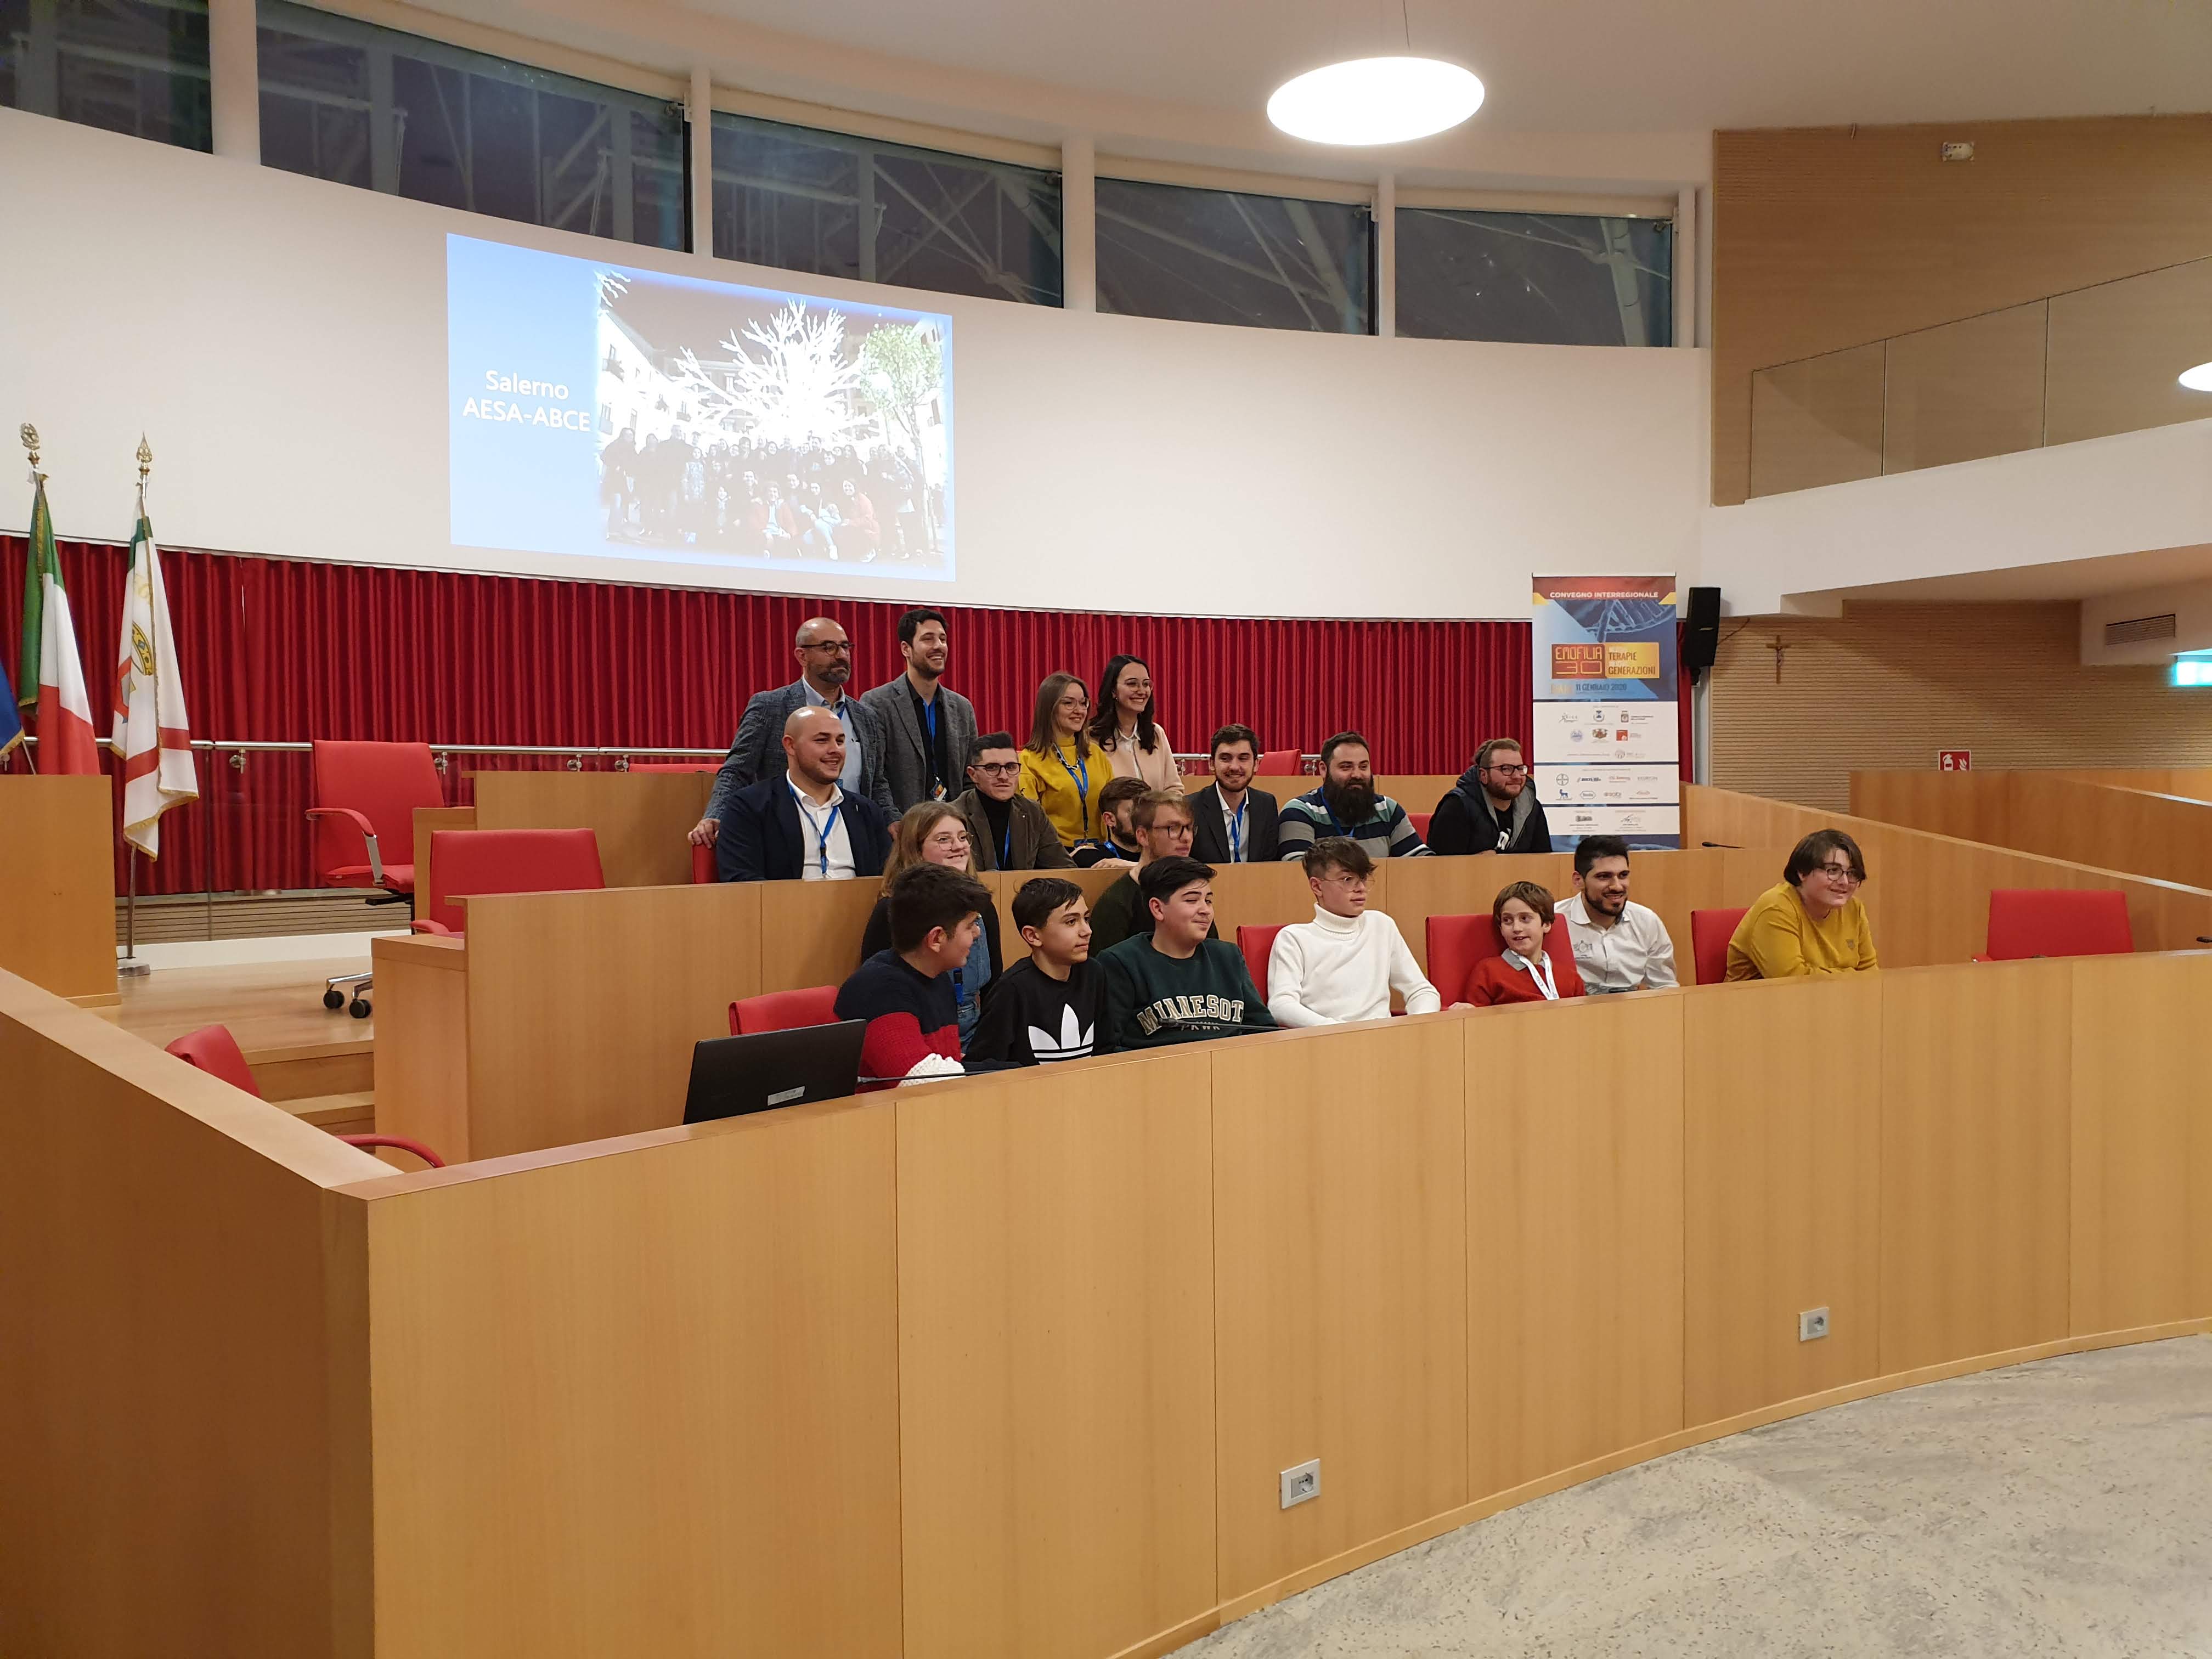 Conclusione del convegno "Emofilia 3.0" di Bari